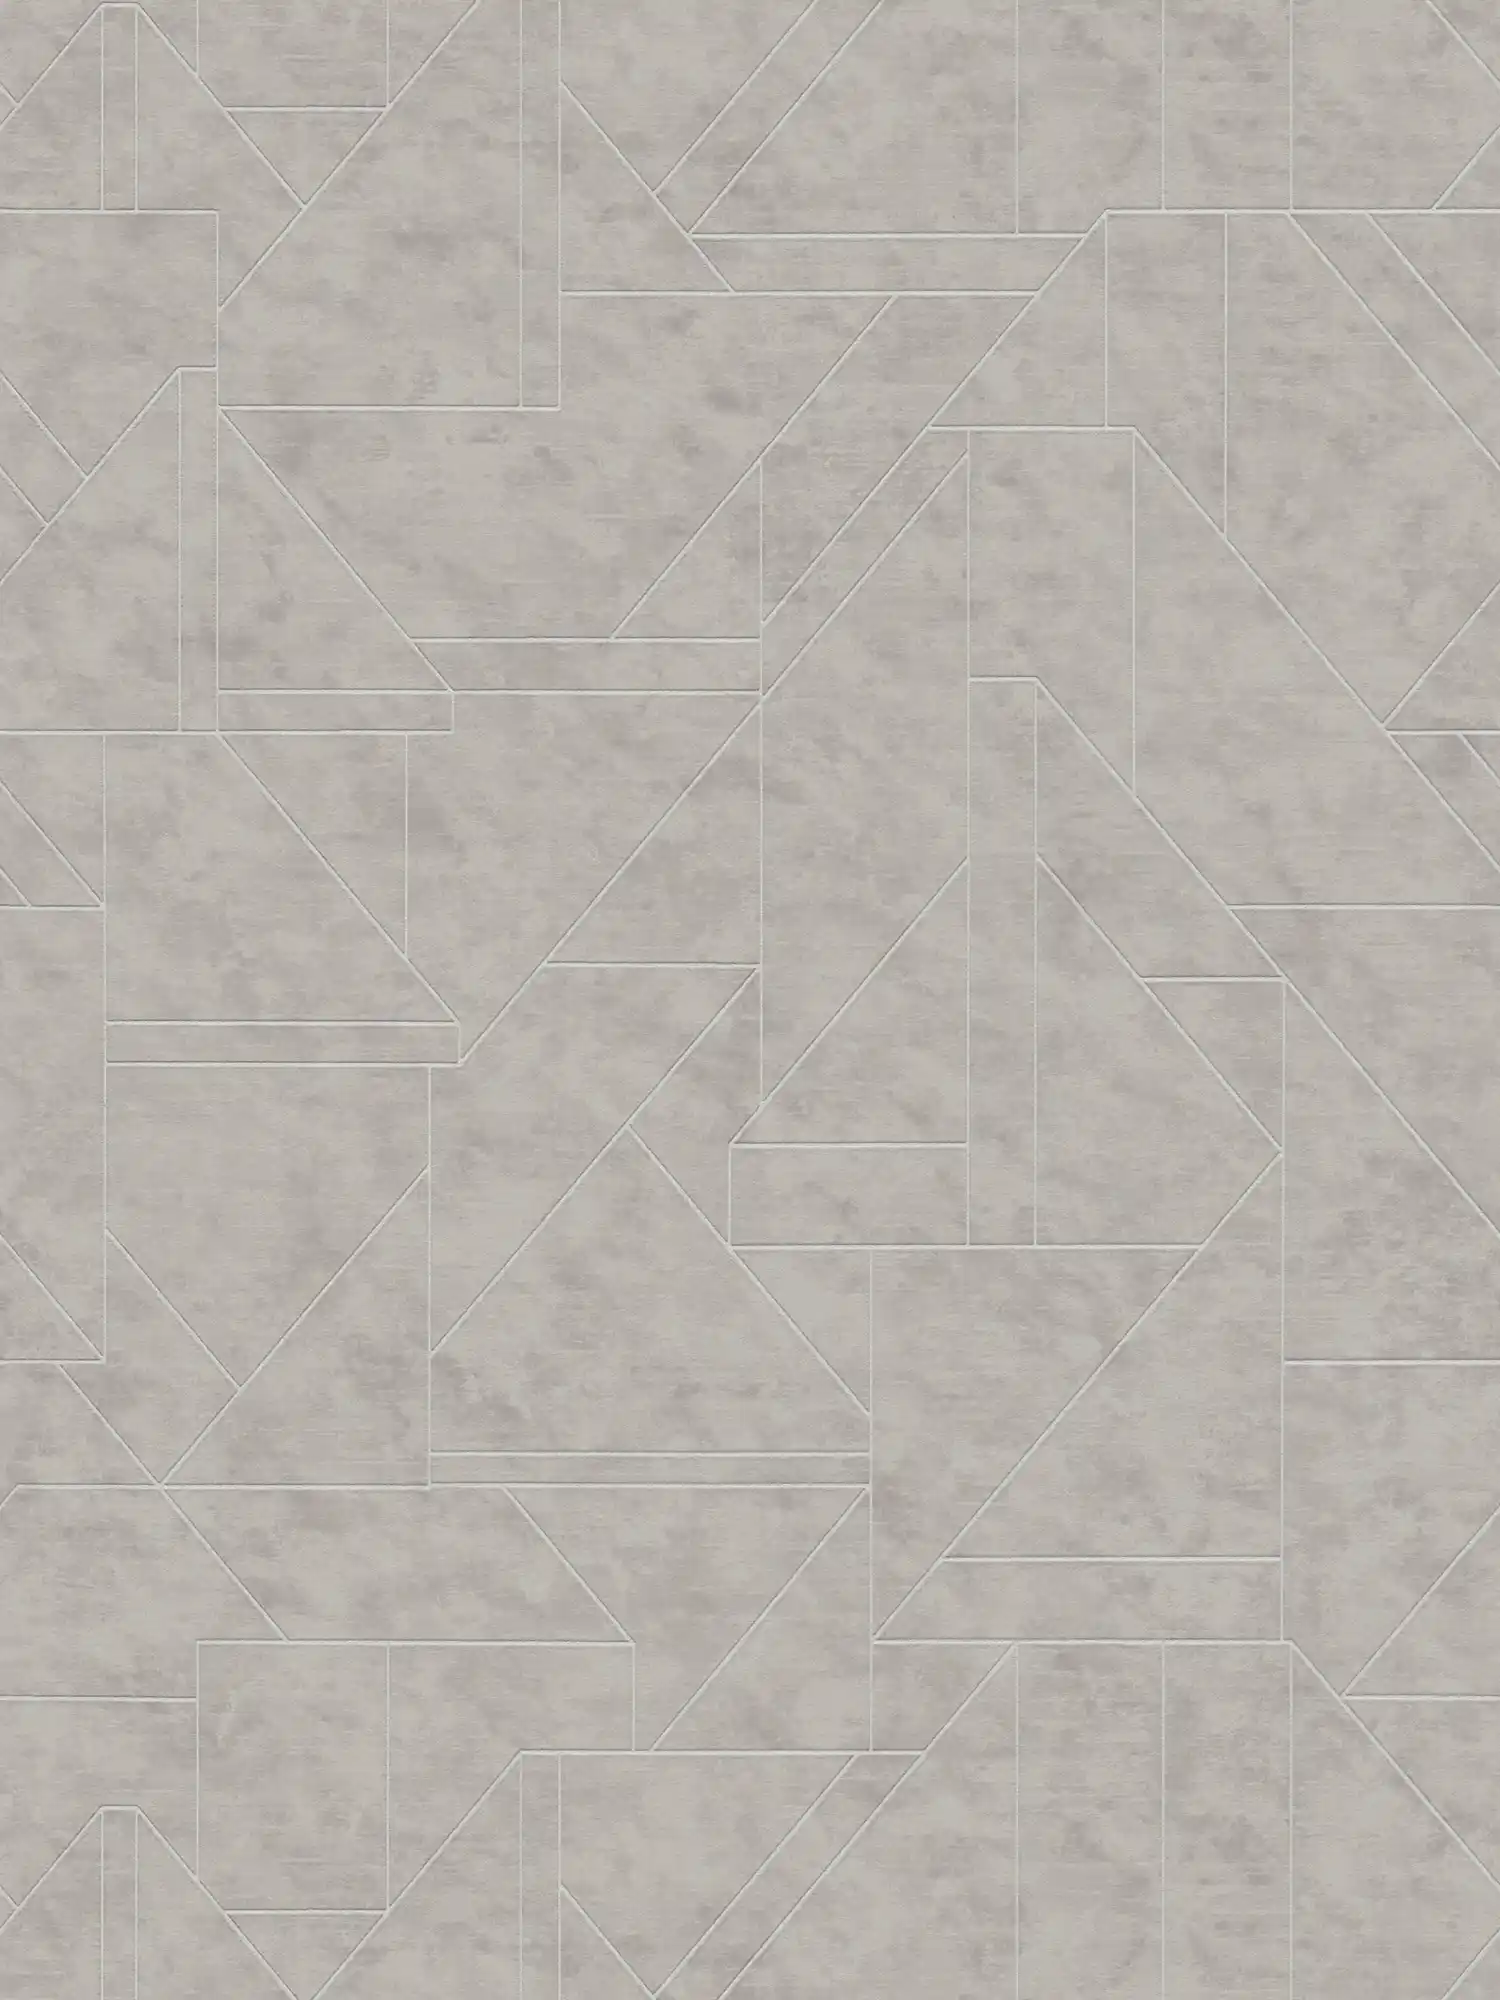             Grafisch vliesbehang met lijnenspel - grijs, zilver
        